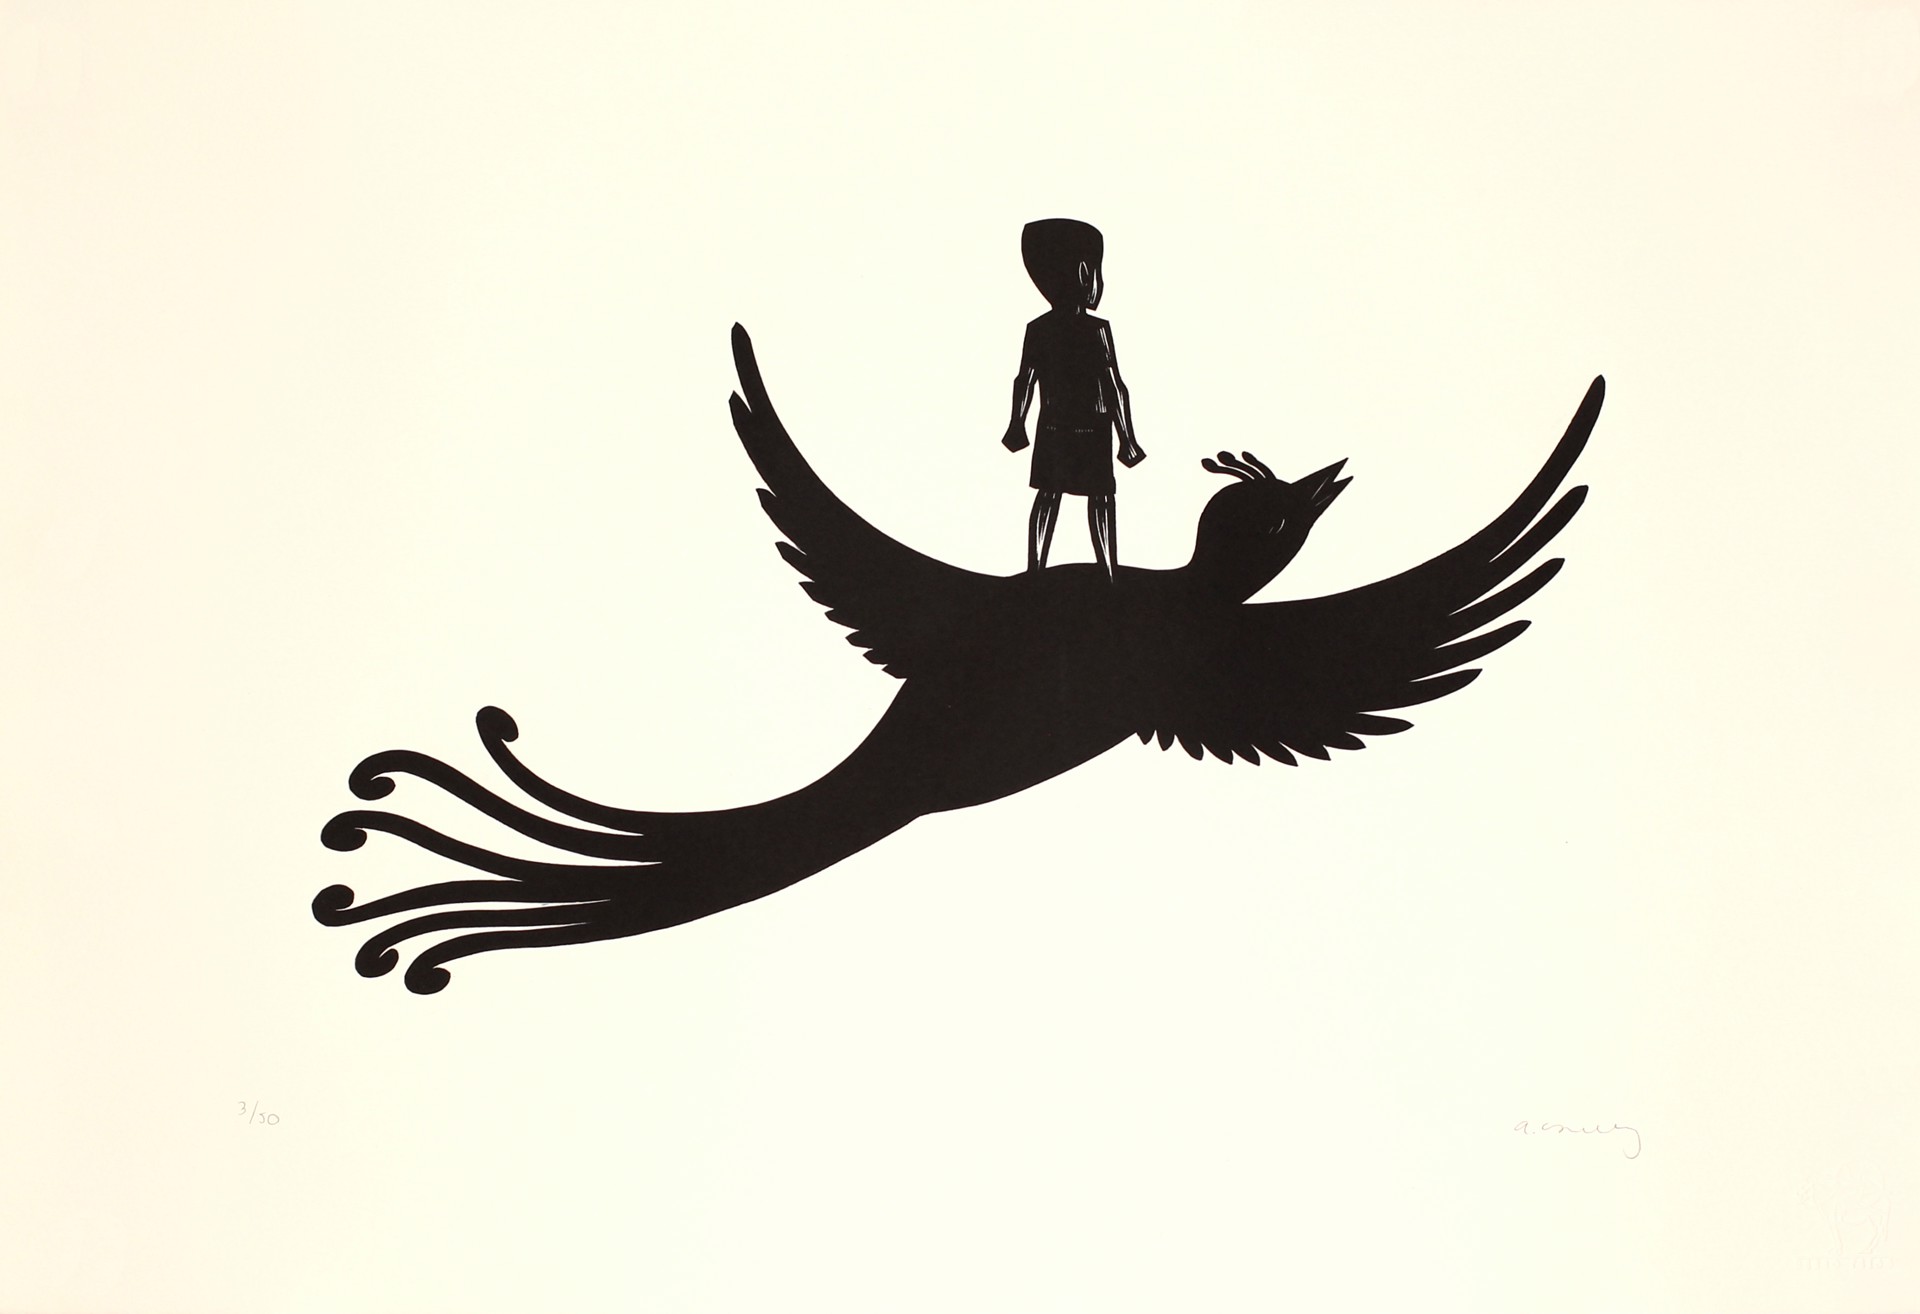 Niño Volando con Pajaro by Alberto Cruz